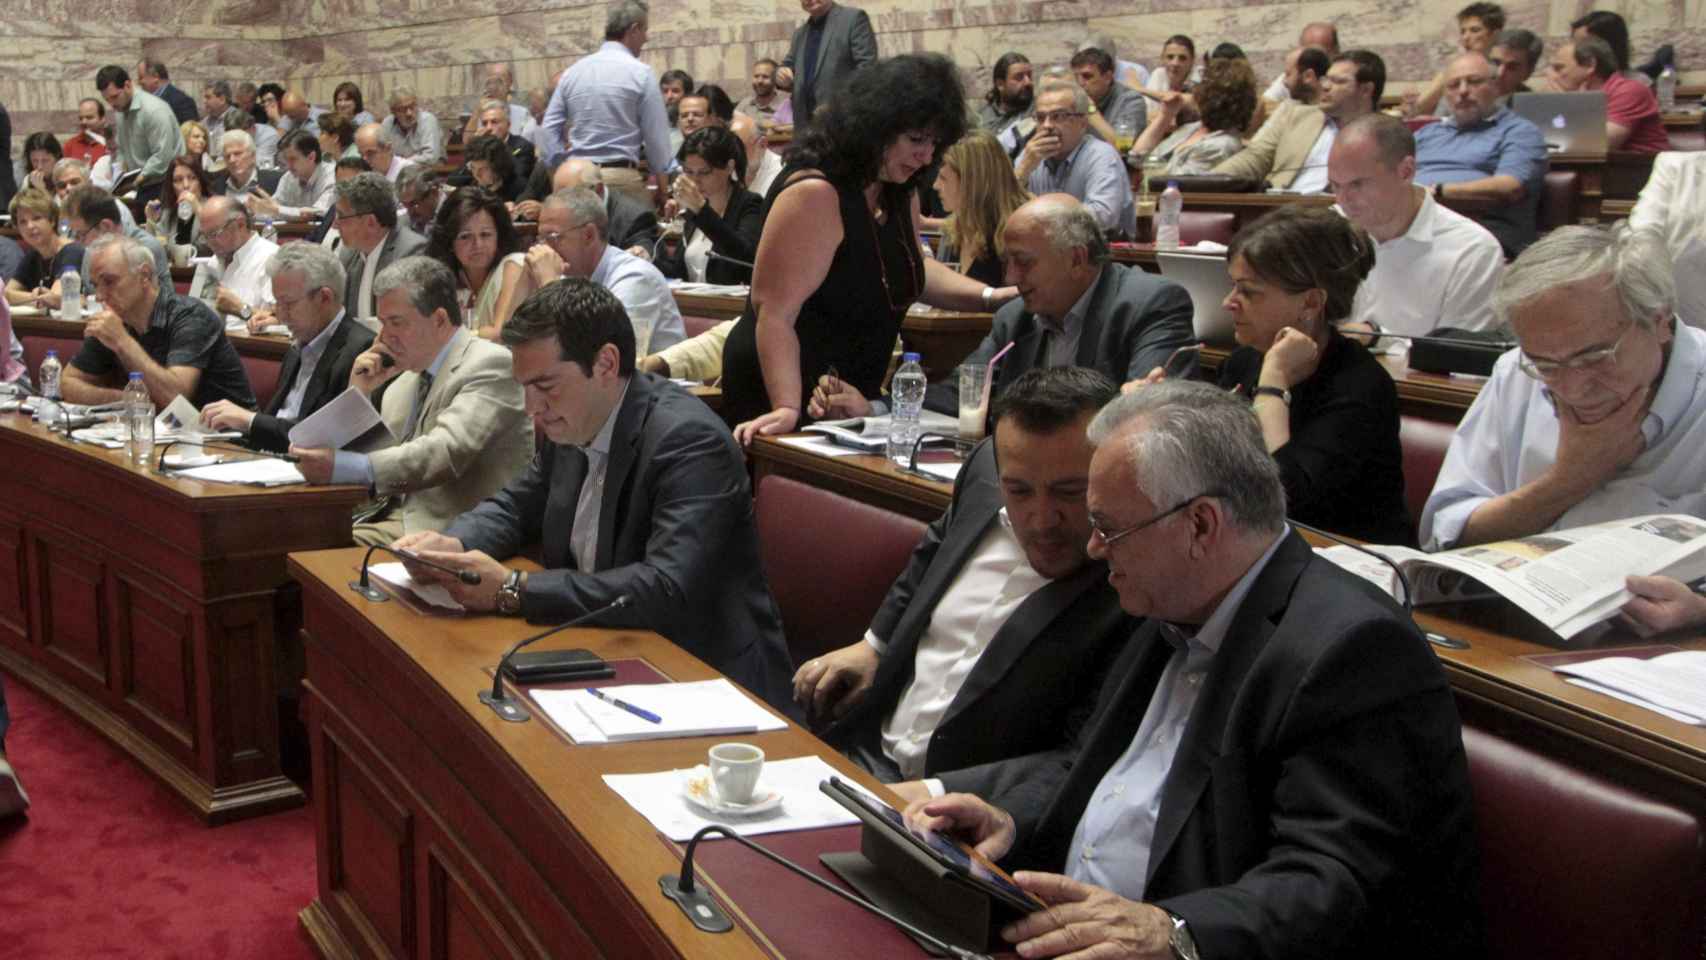 Alexis Tsipras ha explicado hoy al grupo parlamentario de Syriza el contenido de su propuesta para el tercer rescate